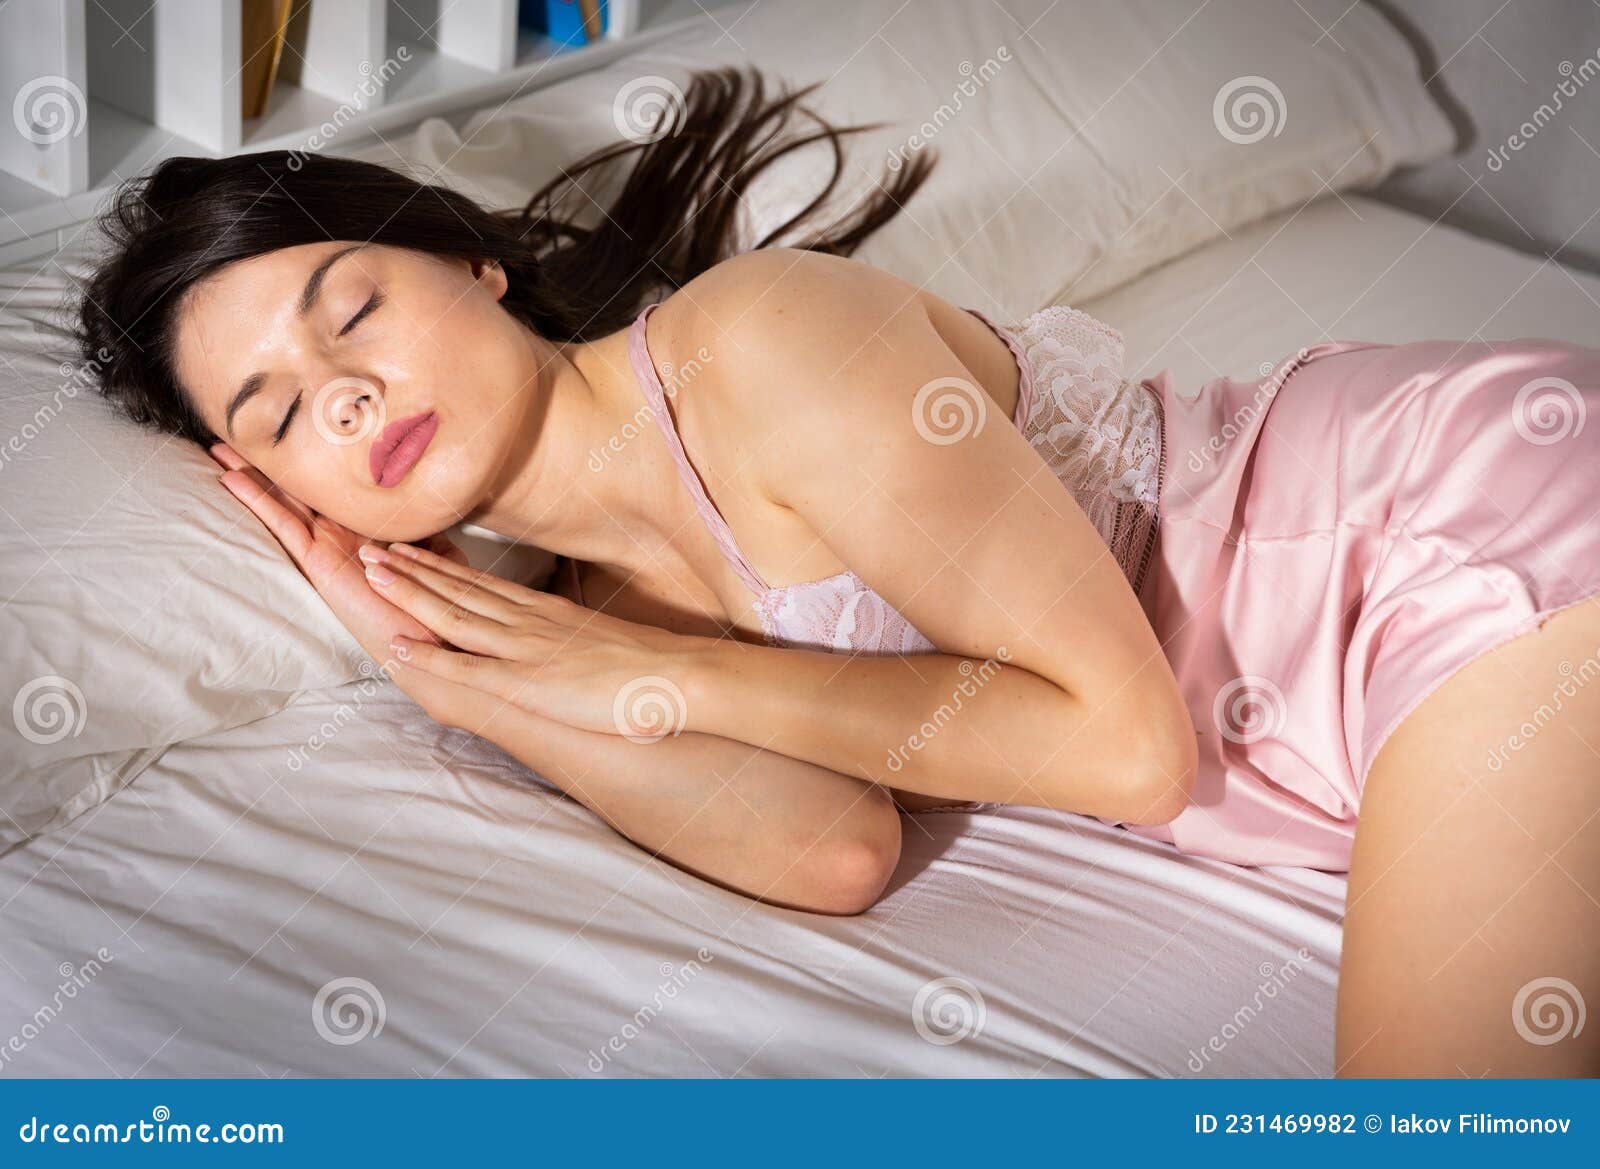 Порно видео голая спящая девушка